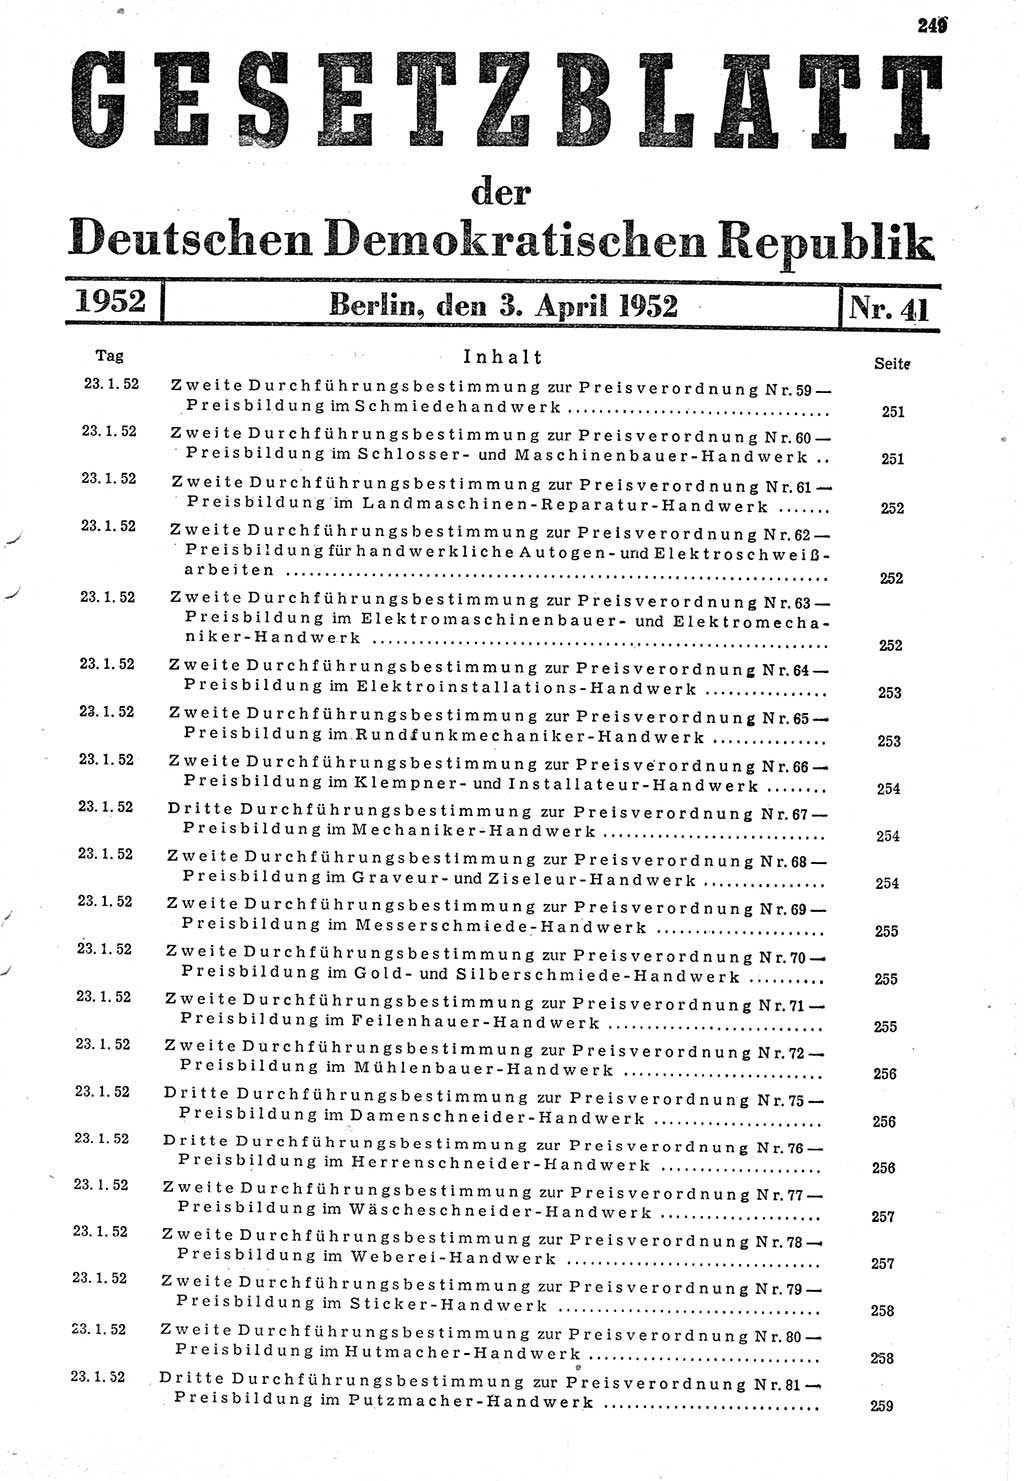 Gesetzblatt (GBl.) der Deutschen Demokratischen Republik (DDR) 1952, Seite 249 (GBl. DDR 1952, S. 249)